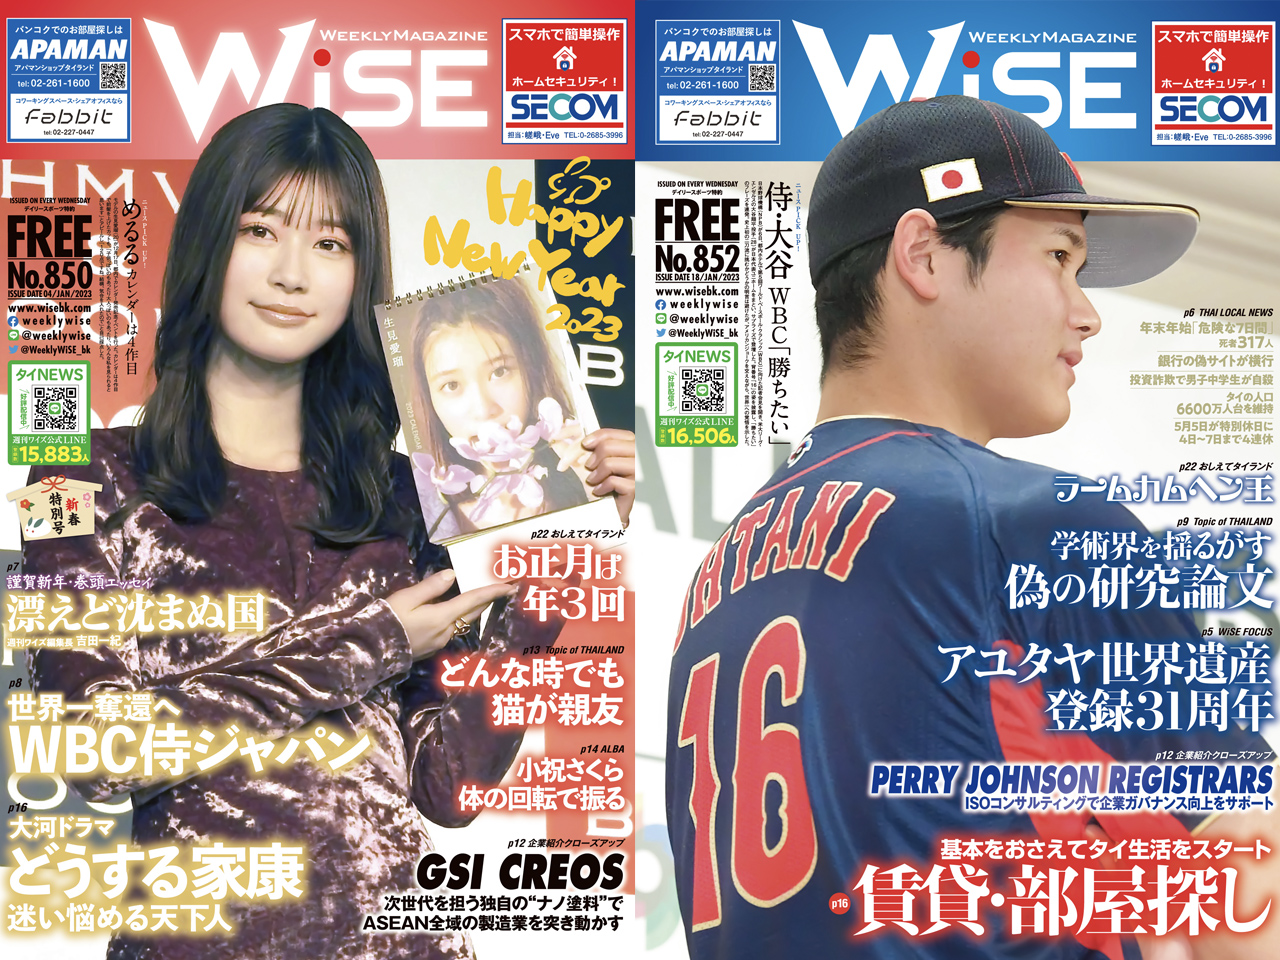 2023年に創刊850号を迎えた『週刊WiSE』はバンコクだけでなく東南アジアの中でダントツ一位だ。
表紙を有名人が飾り、他誌を圧倒する存在感を誇る。